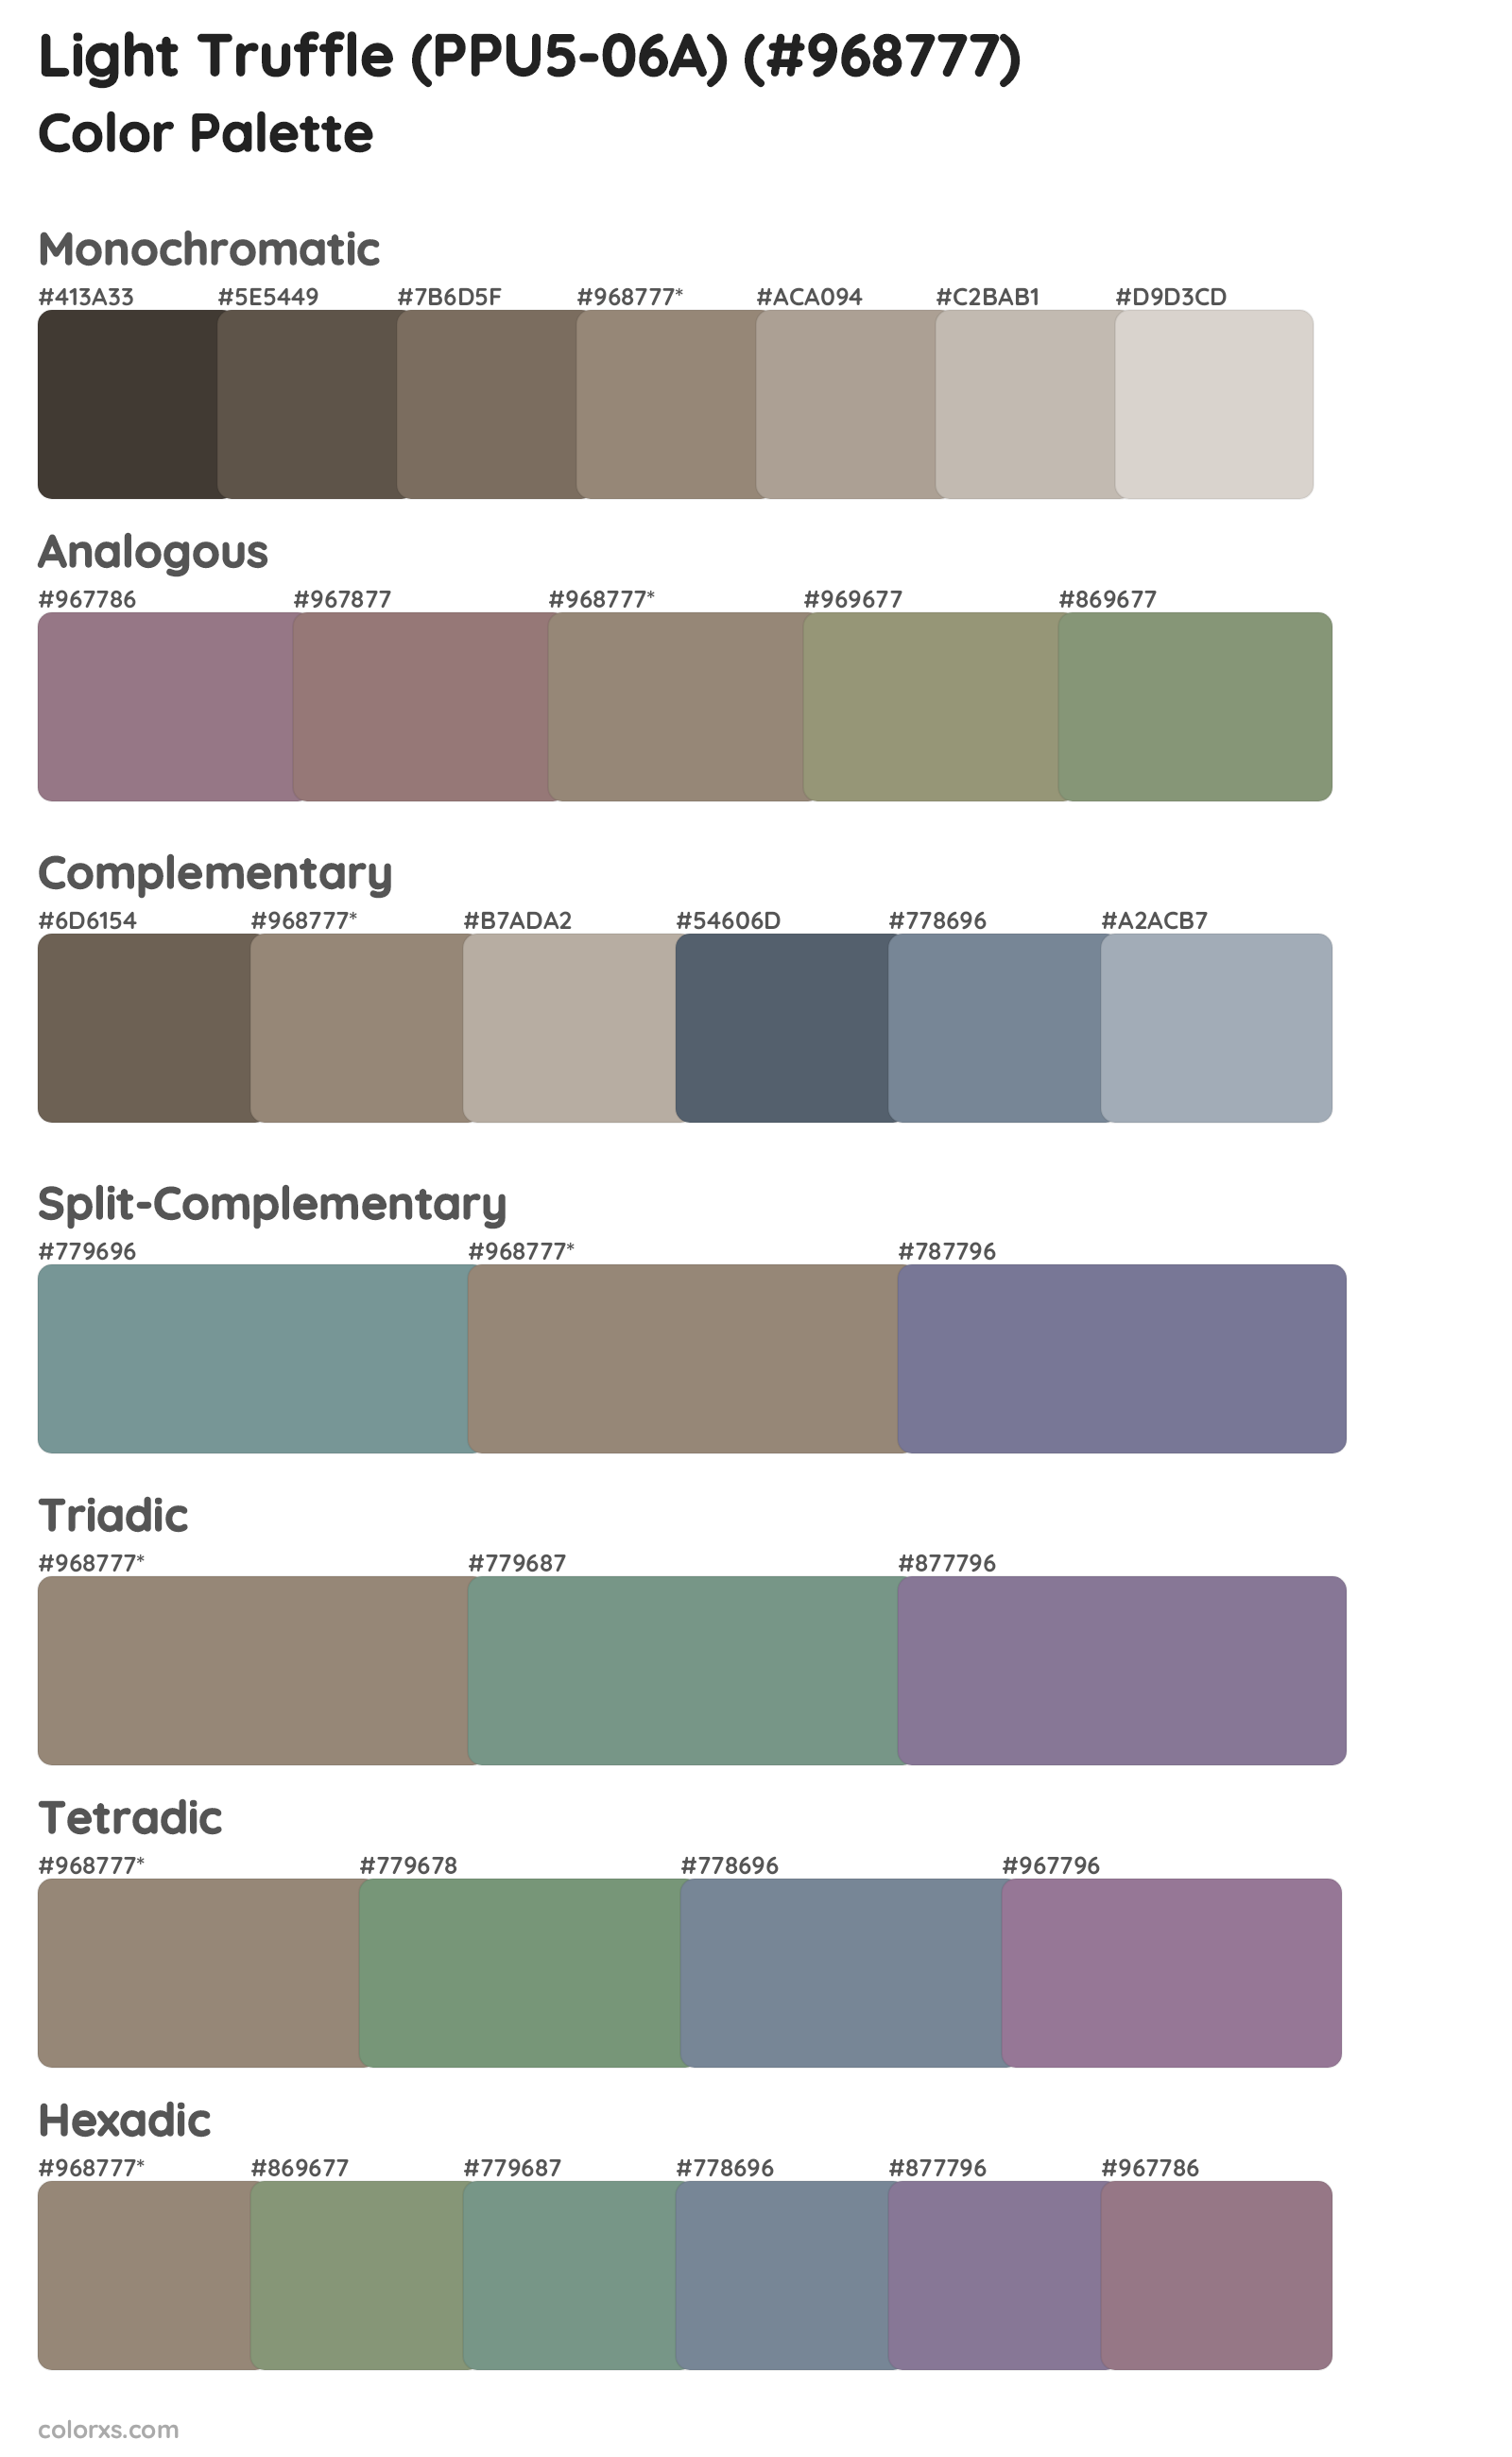 Light Truffle (PPU5-06A) Color Scheme Palettes